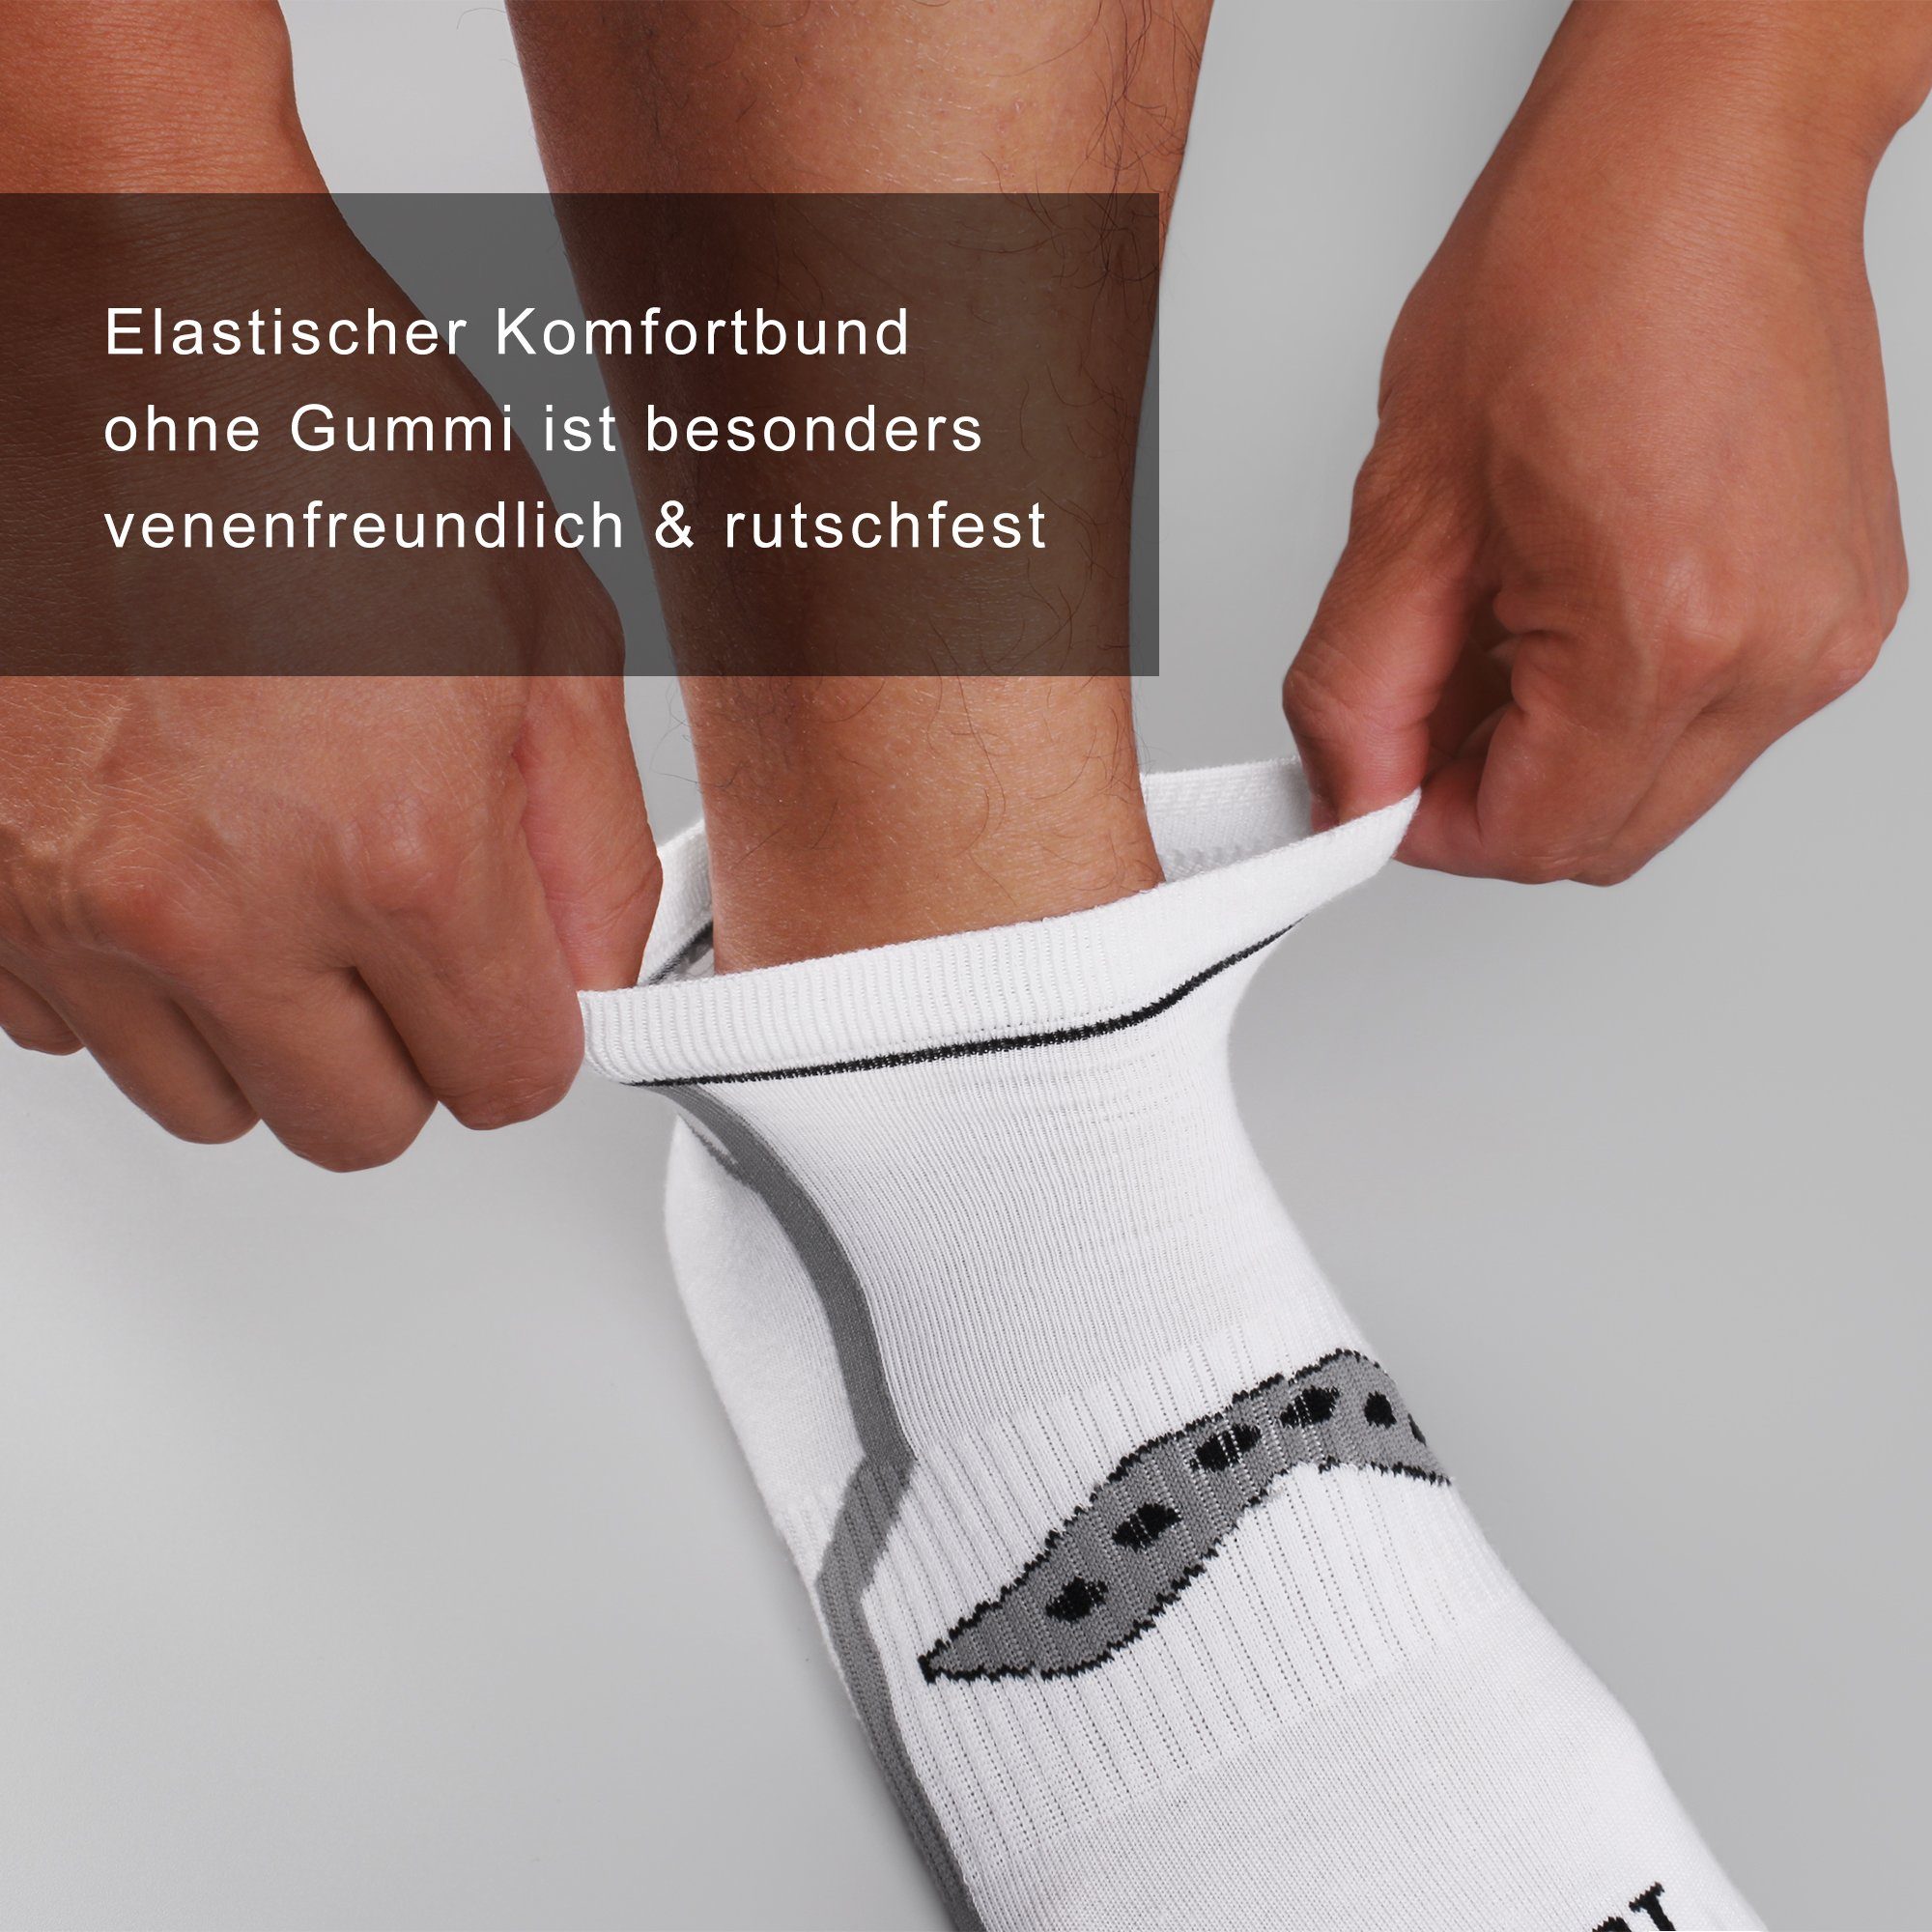 Sportsocken Sneaker Baumwolle (10er-Pack) Herren Socken 2303 aus 2327 L&K